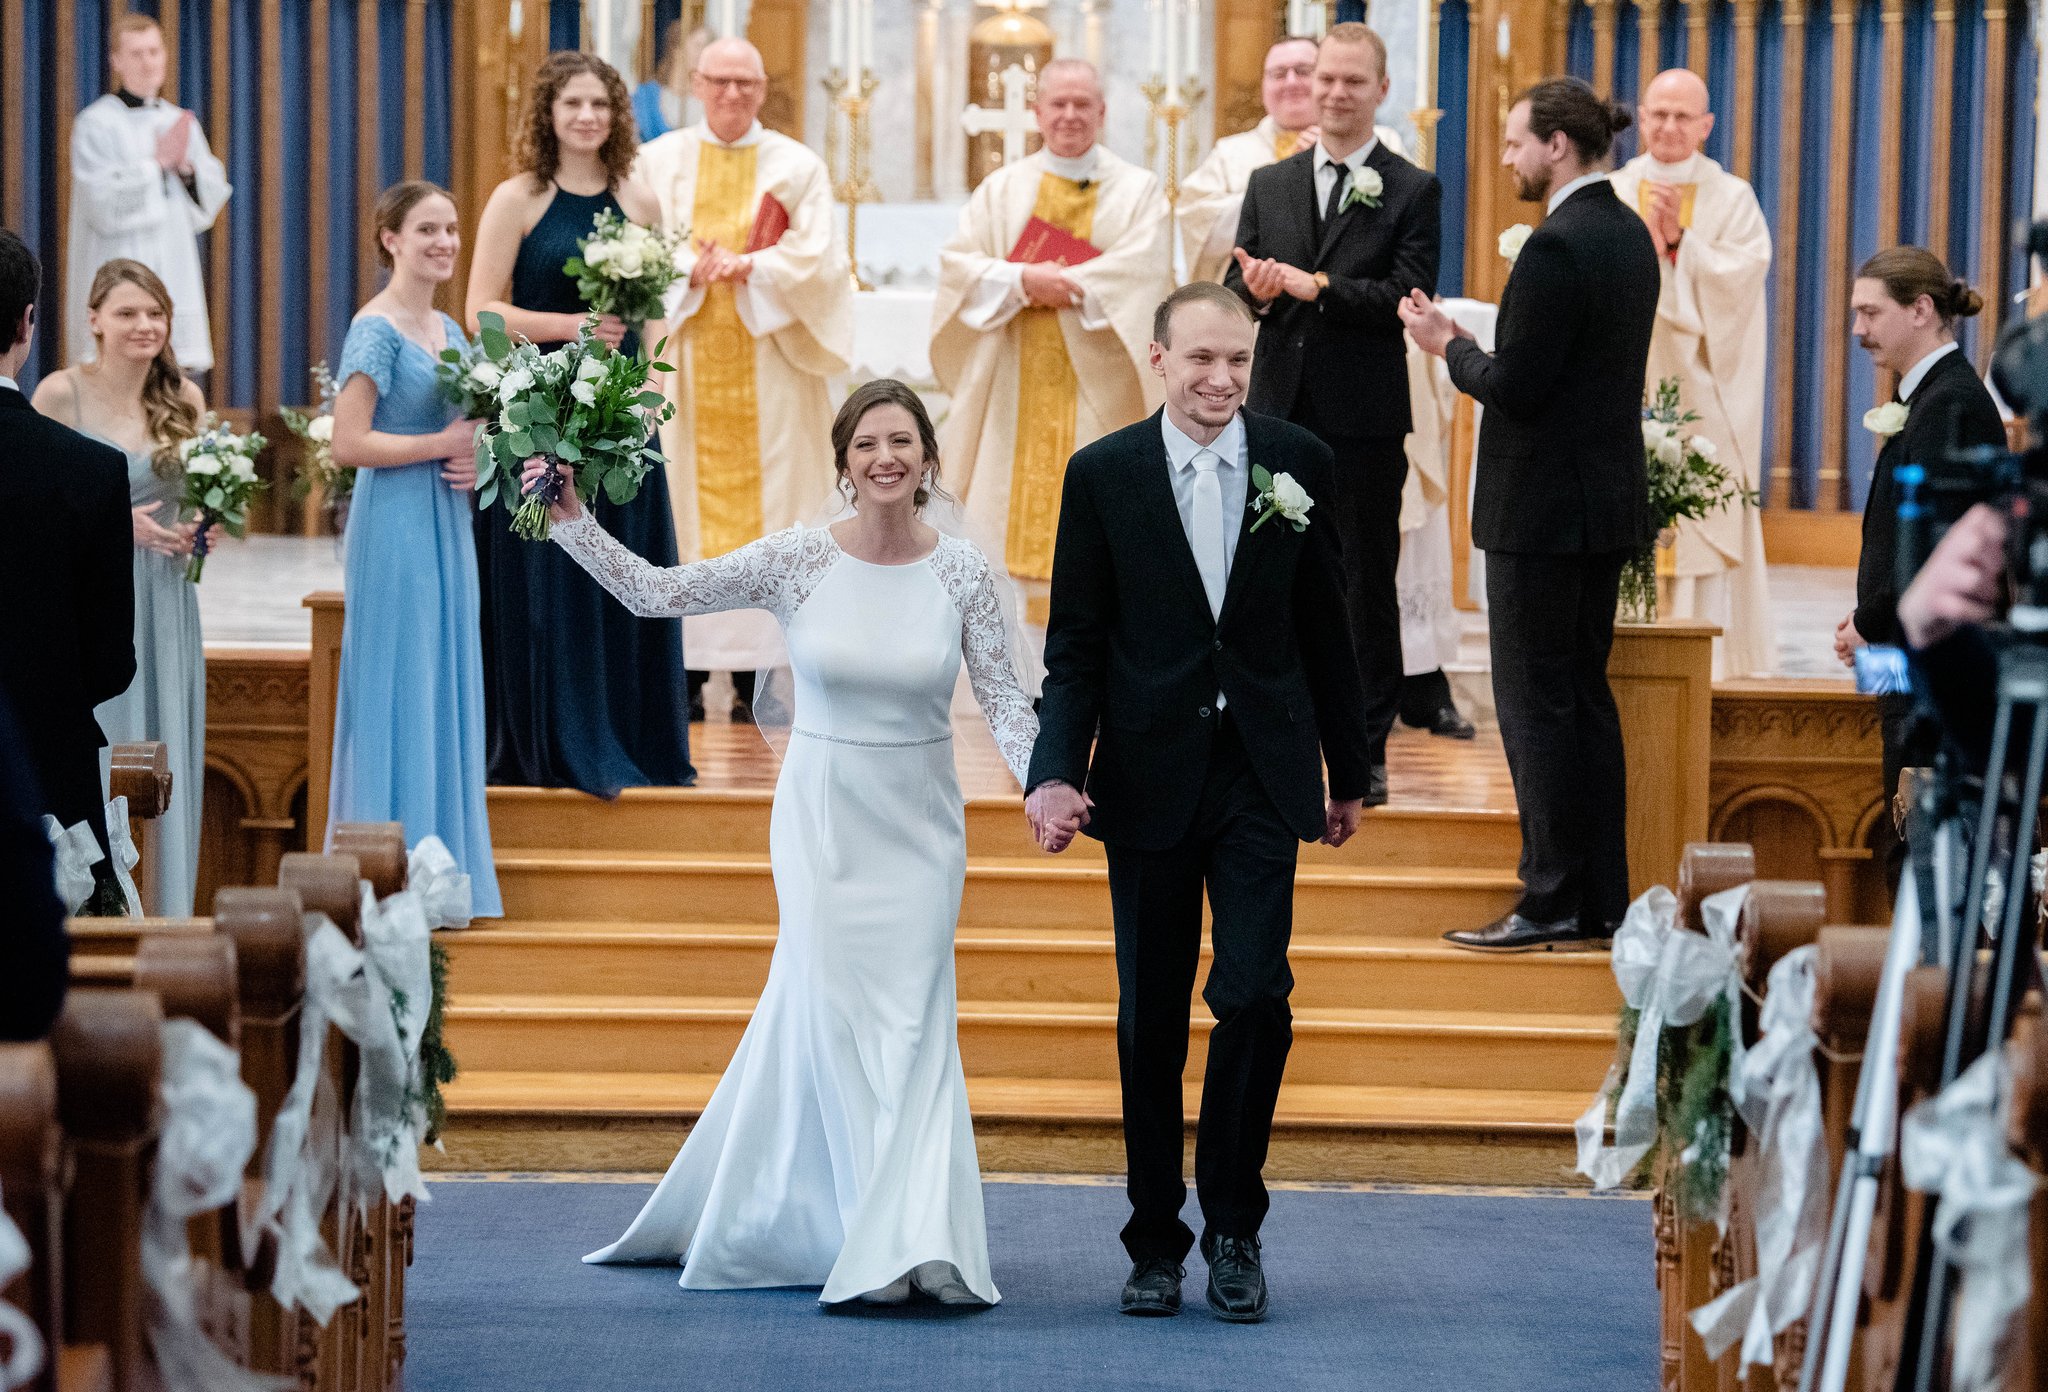 DSC 0050 - John and Faith's Wedding | Fargo, ND